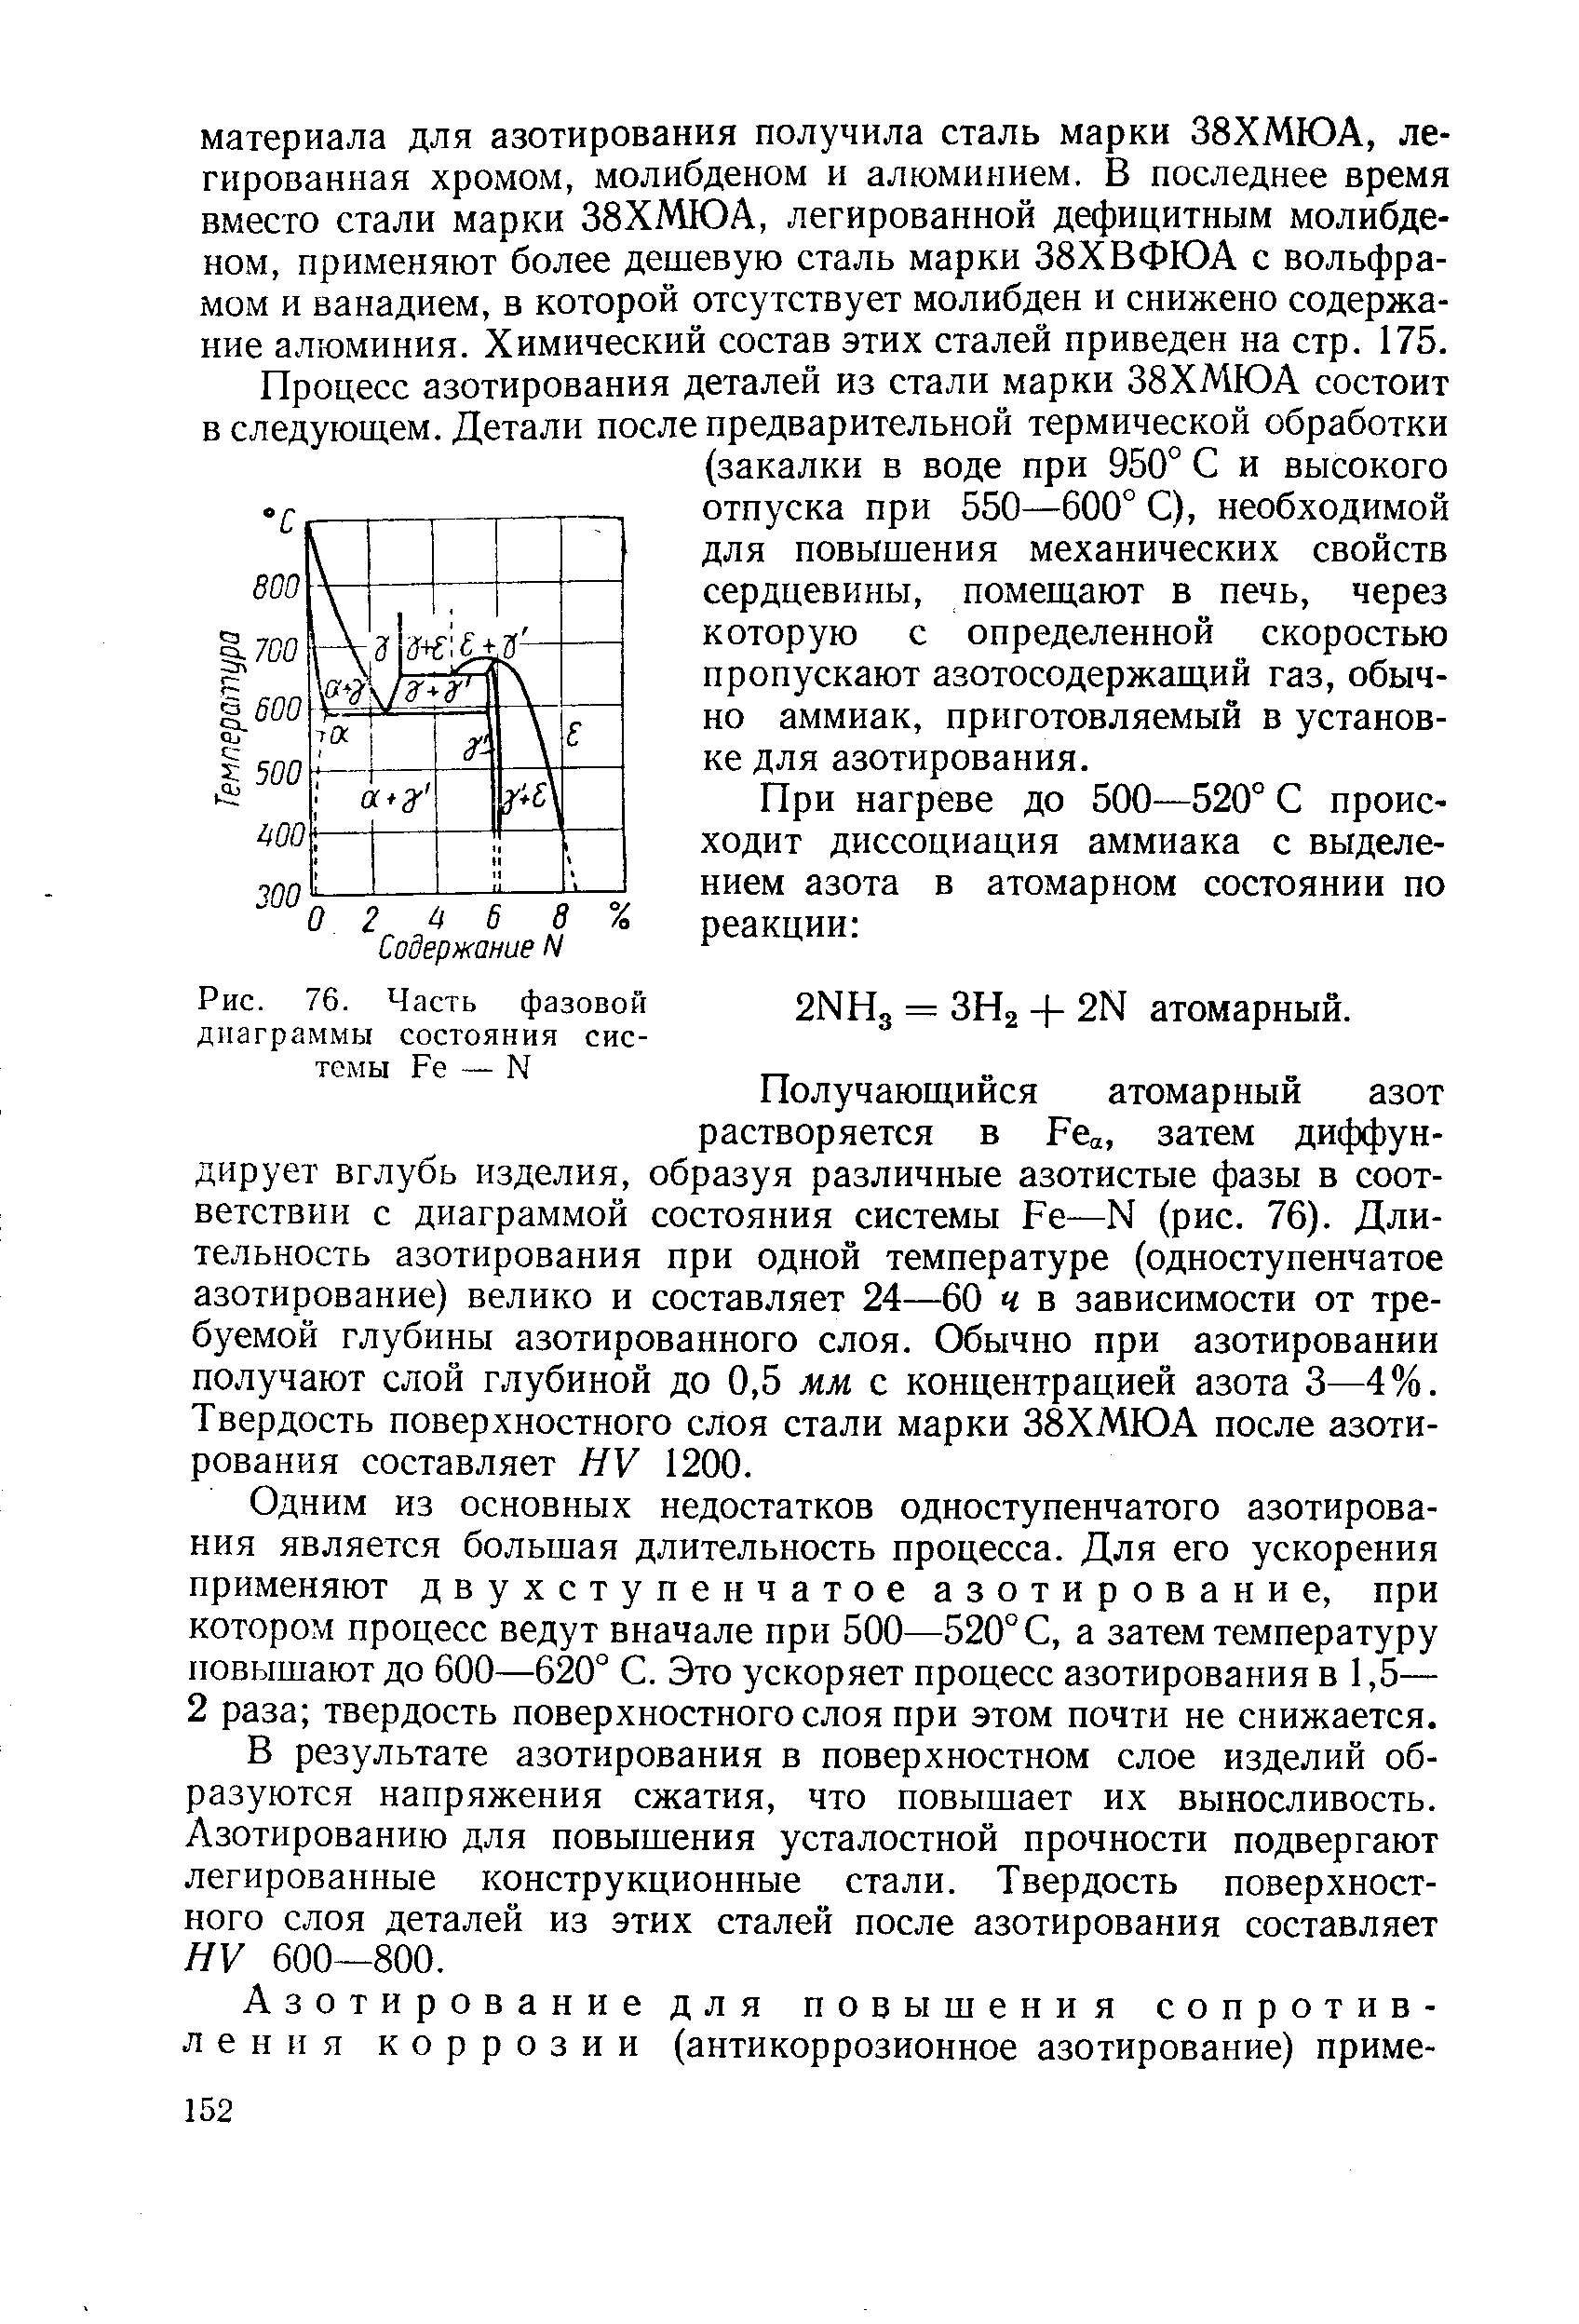 Рис. 76. Часть фазовой диаграммы состояния системы Ре — N
